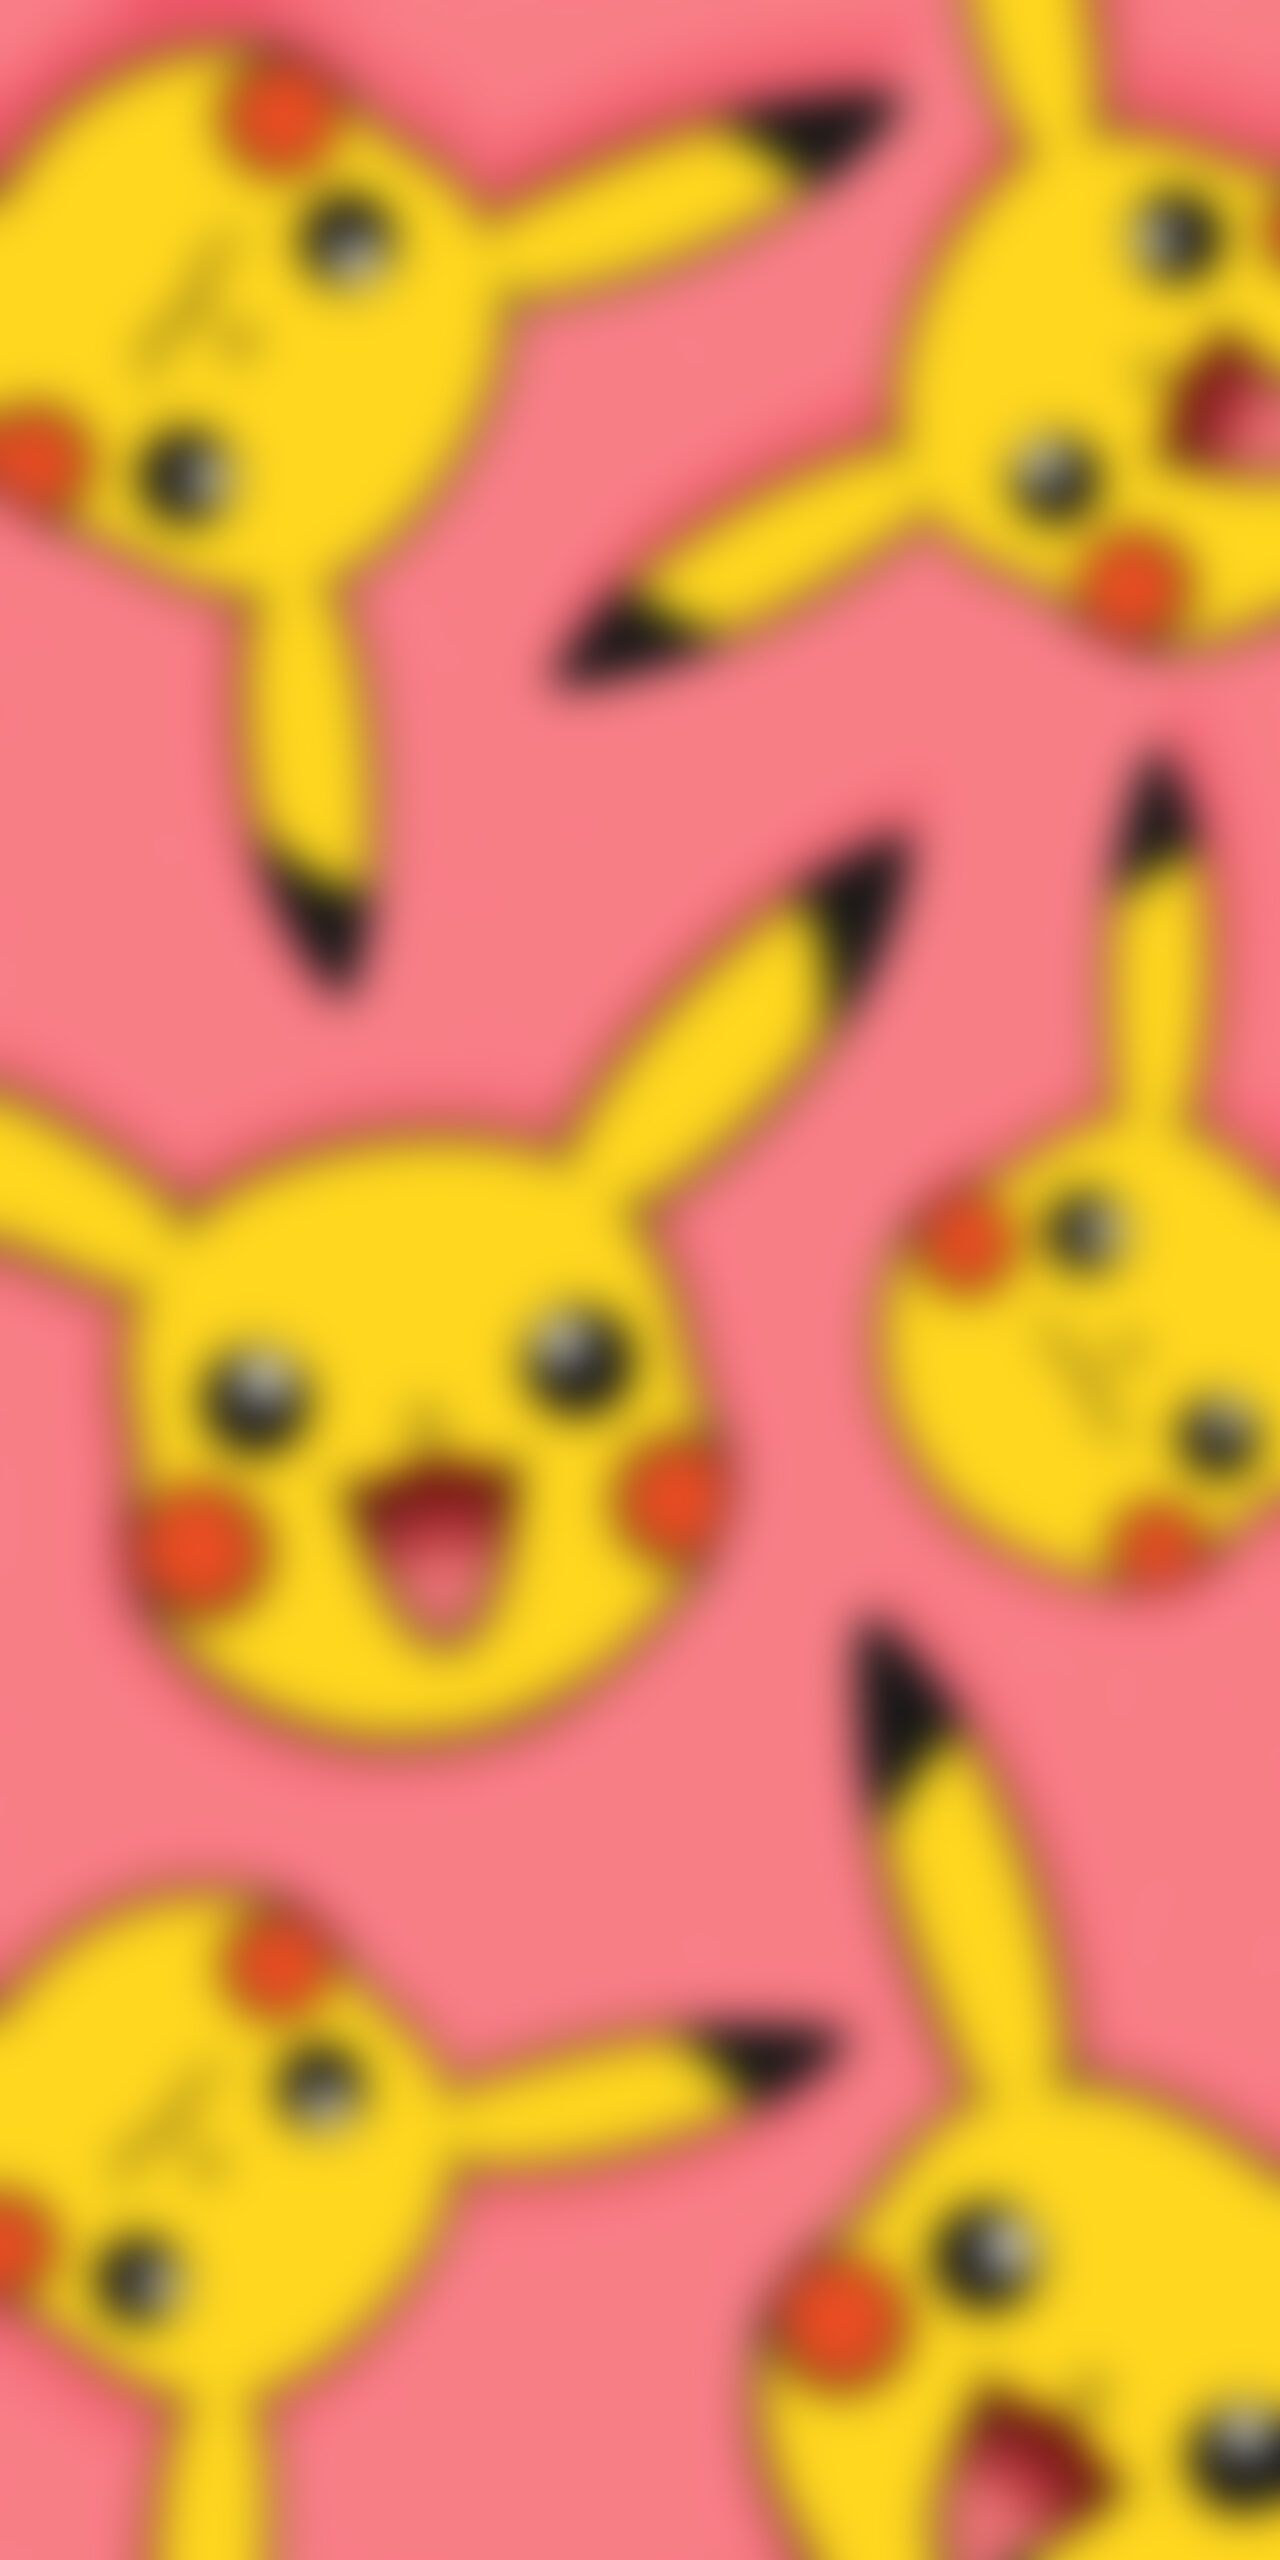  Pikachu Hintergrundbild 1280x2560. Pokémon Smiling Pikachu Pink Wallpaper